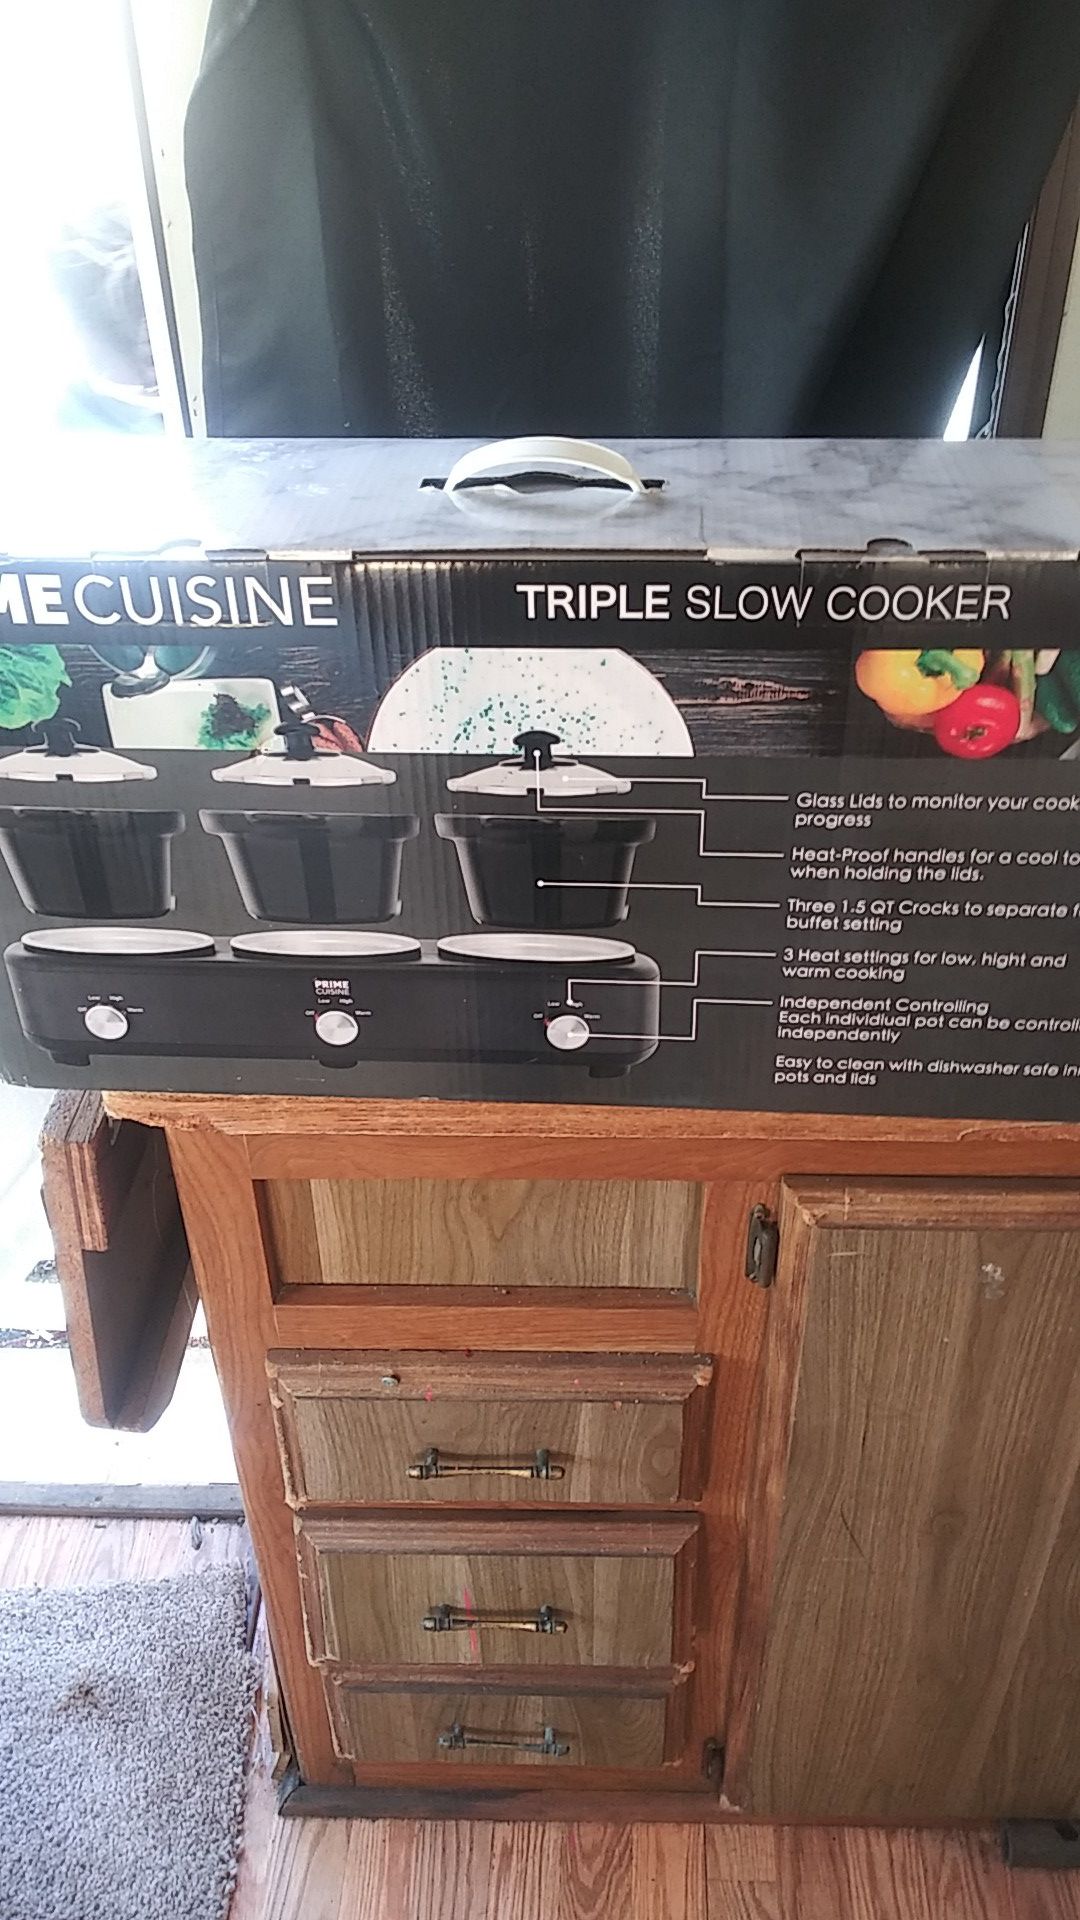 Prime cuisine triple slow cooker